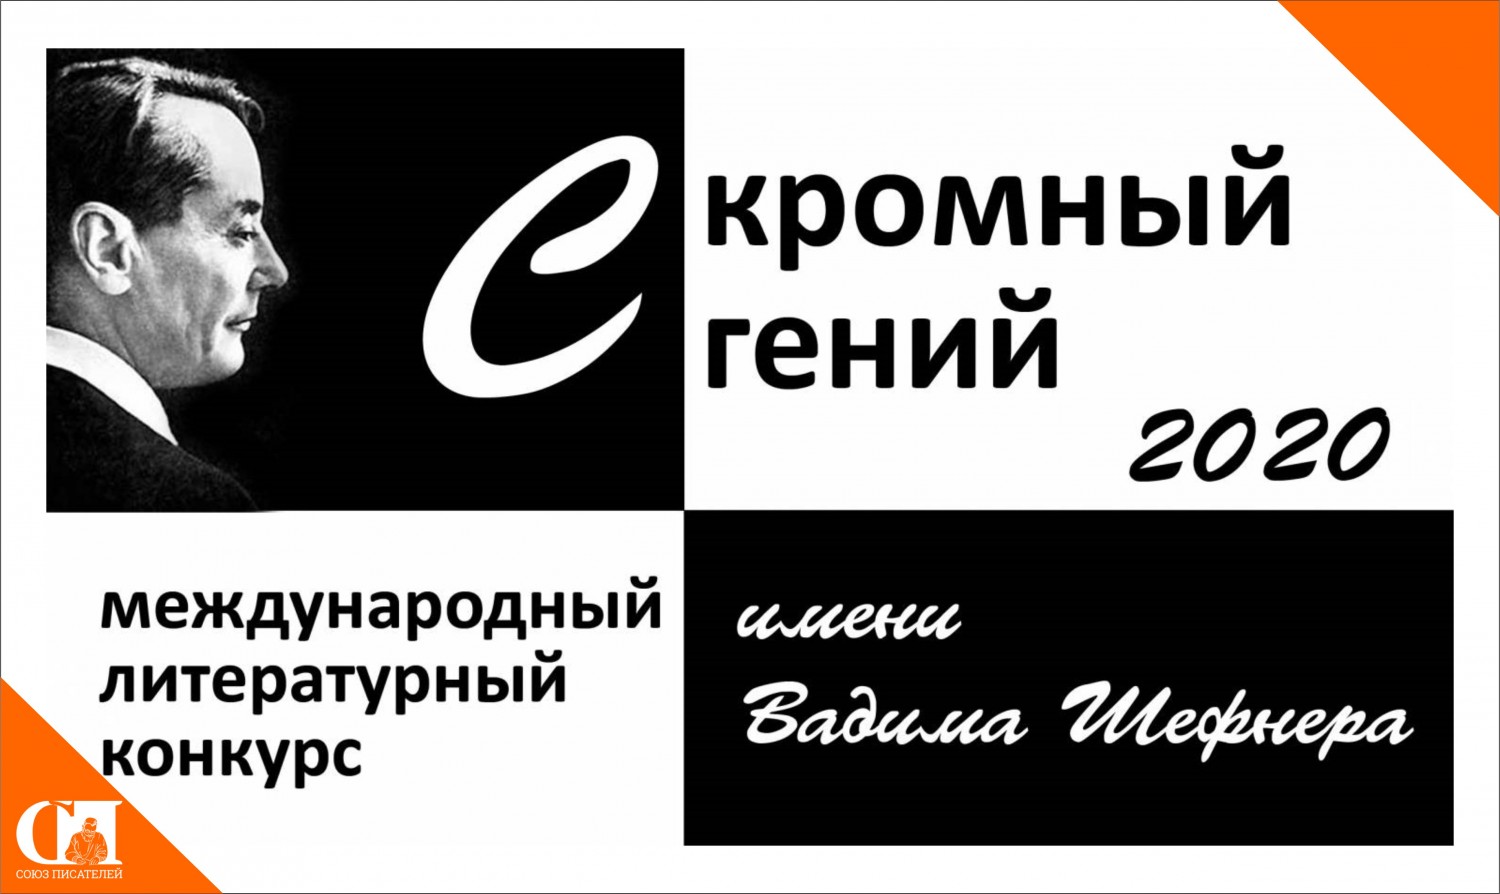 Литературный конкурс «Скромный гений» памяти Вадима Шефнера открыт